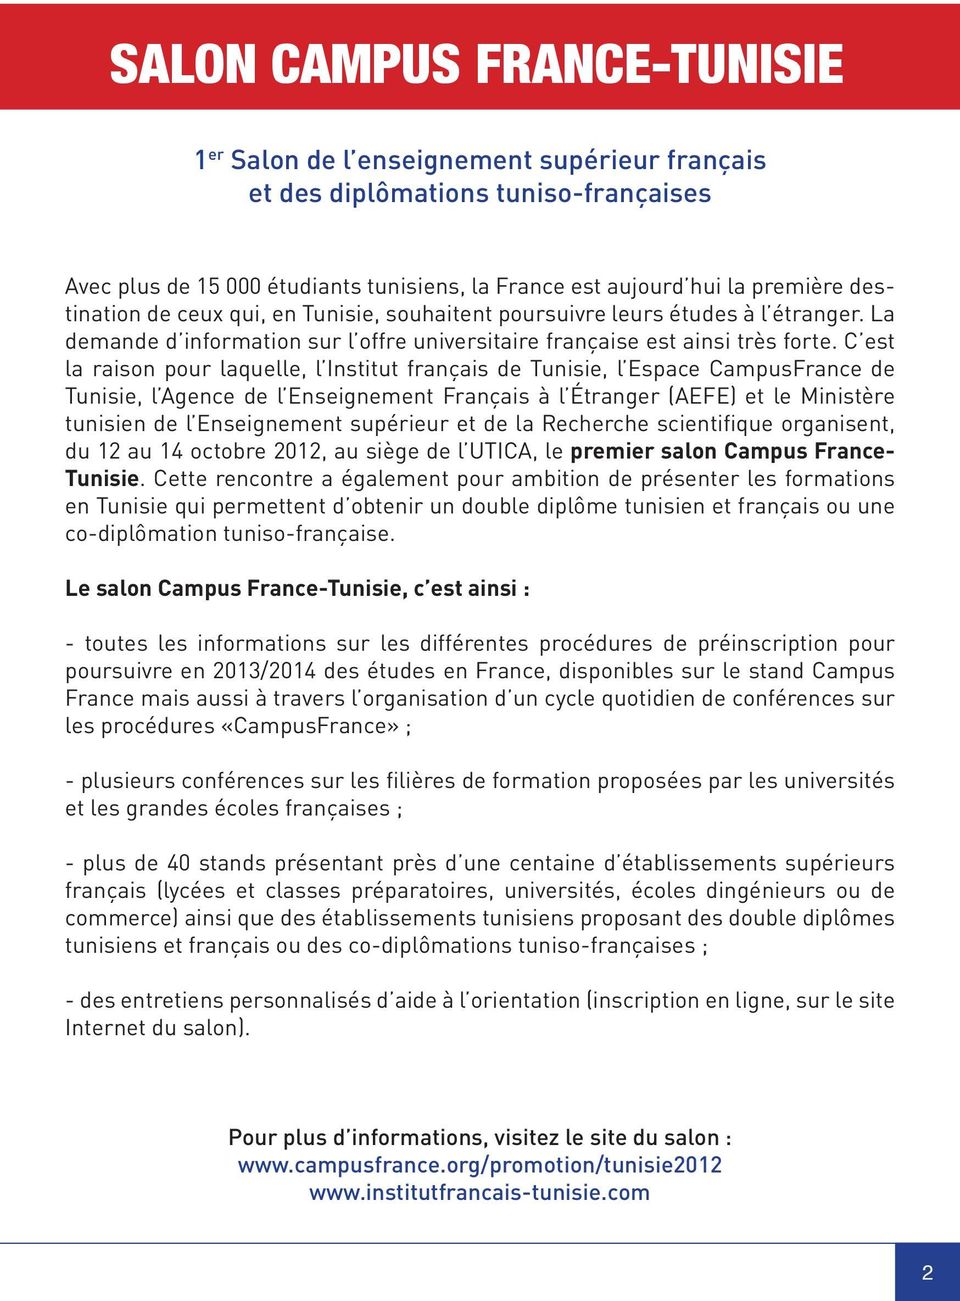 C est la raison pour laquelle, l Institut français de Tunisie, l Espace CampusFrance de Tunisie, l Agence de l Enseignement Français à l Étranger (AEFE) et le Ministère tunisien de l Enseignement